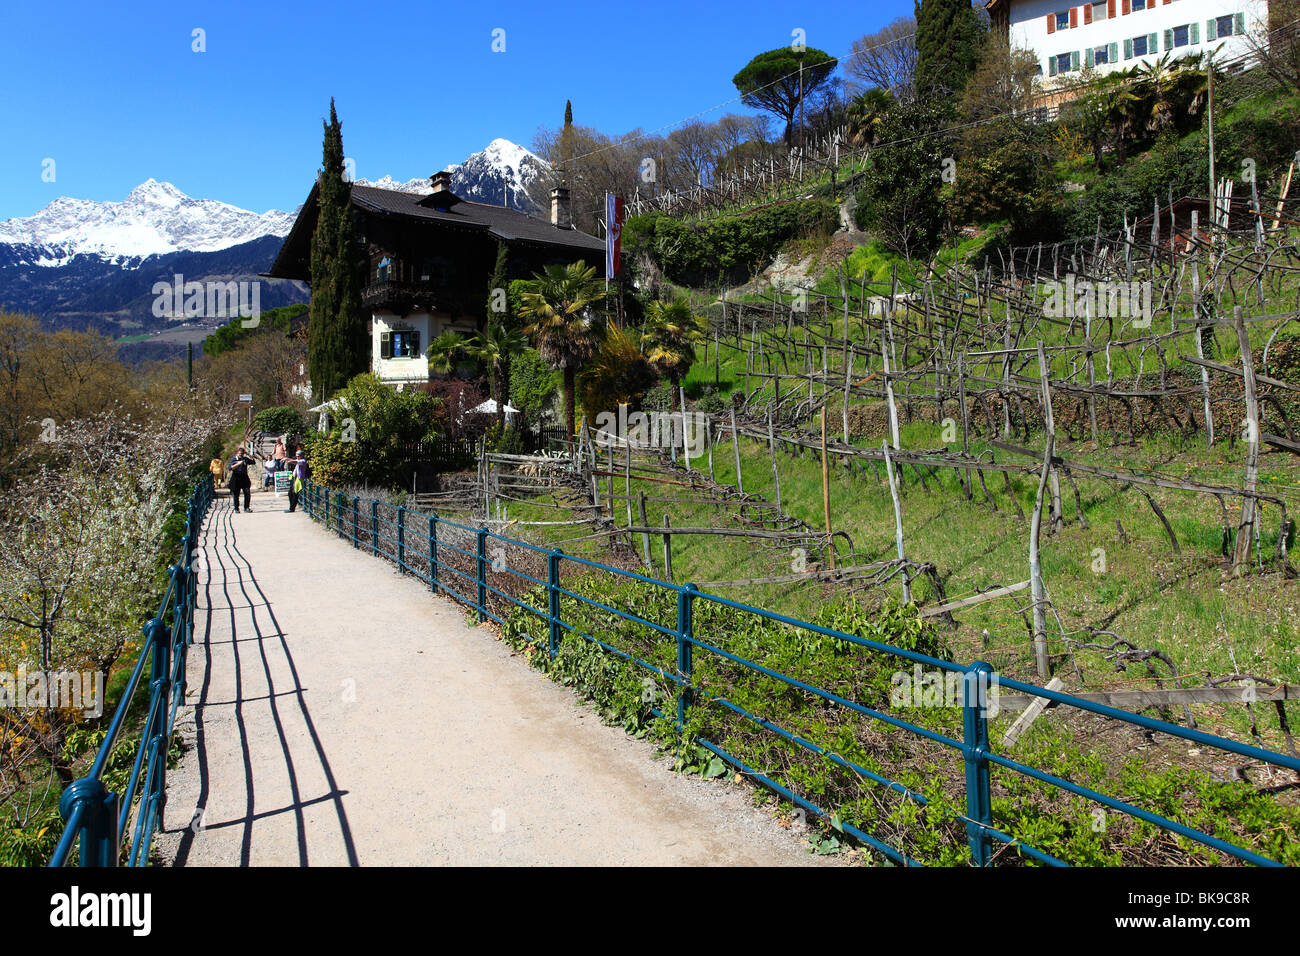 merano town, italian alps Stock Photo